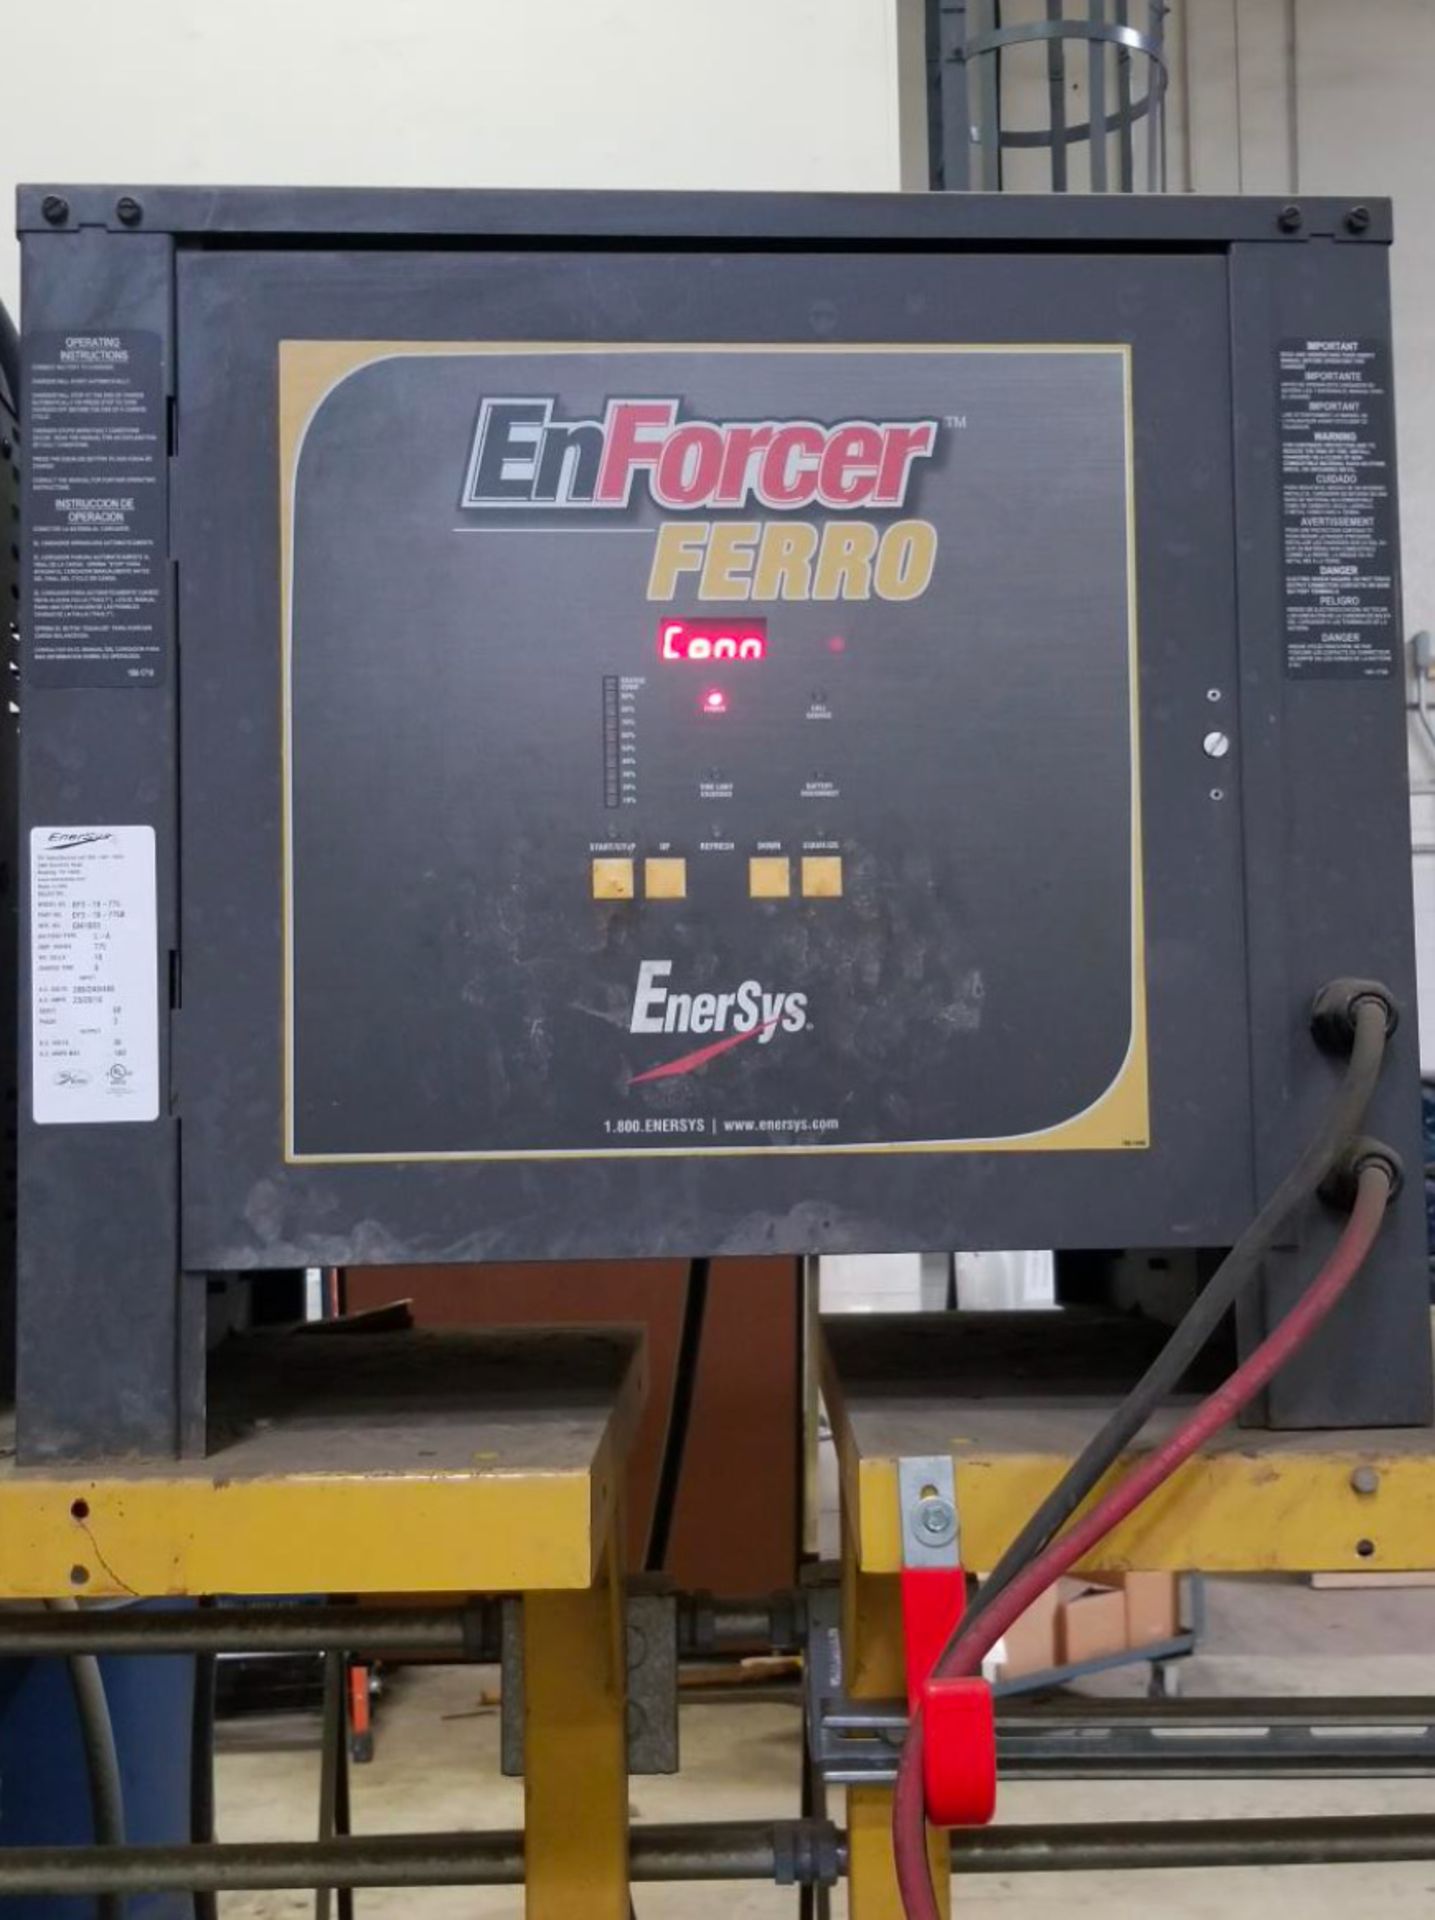 (4) Enersys Enforcer Ferro Forklift Battery Chargers, 36V / 140 Amps Max, Models EF3-18-775 - Image 3 of 10